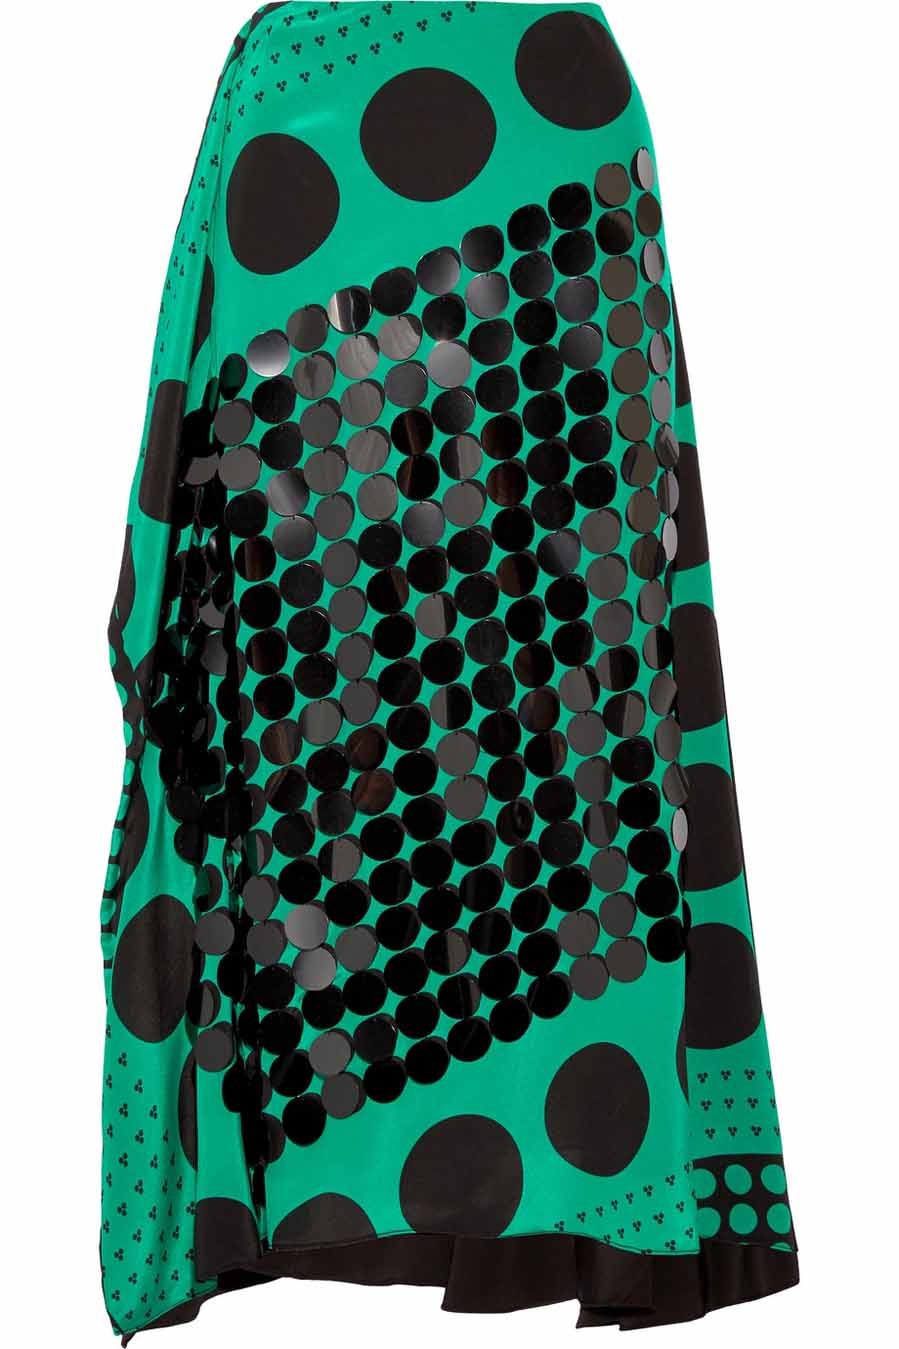 Falda verde esmeralda con crculos negros (460 euros)